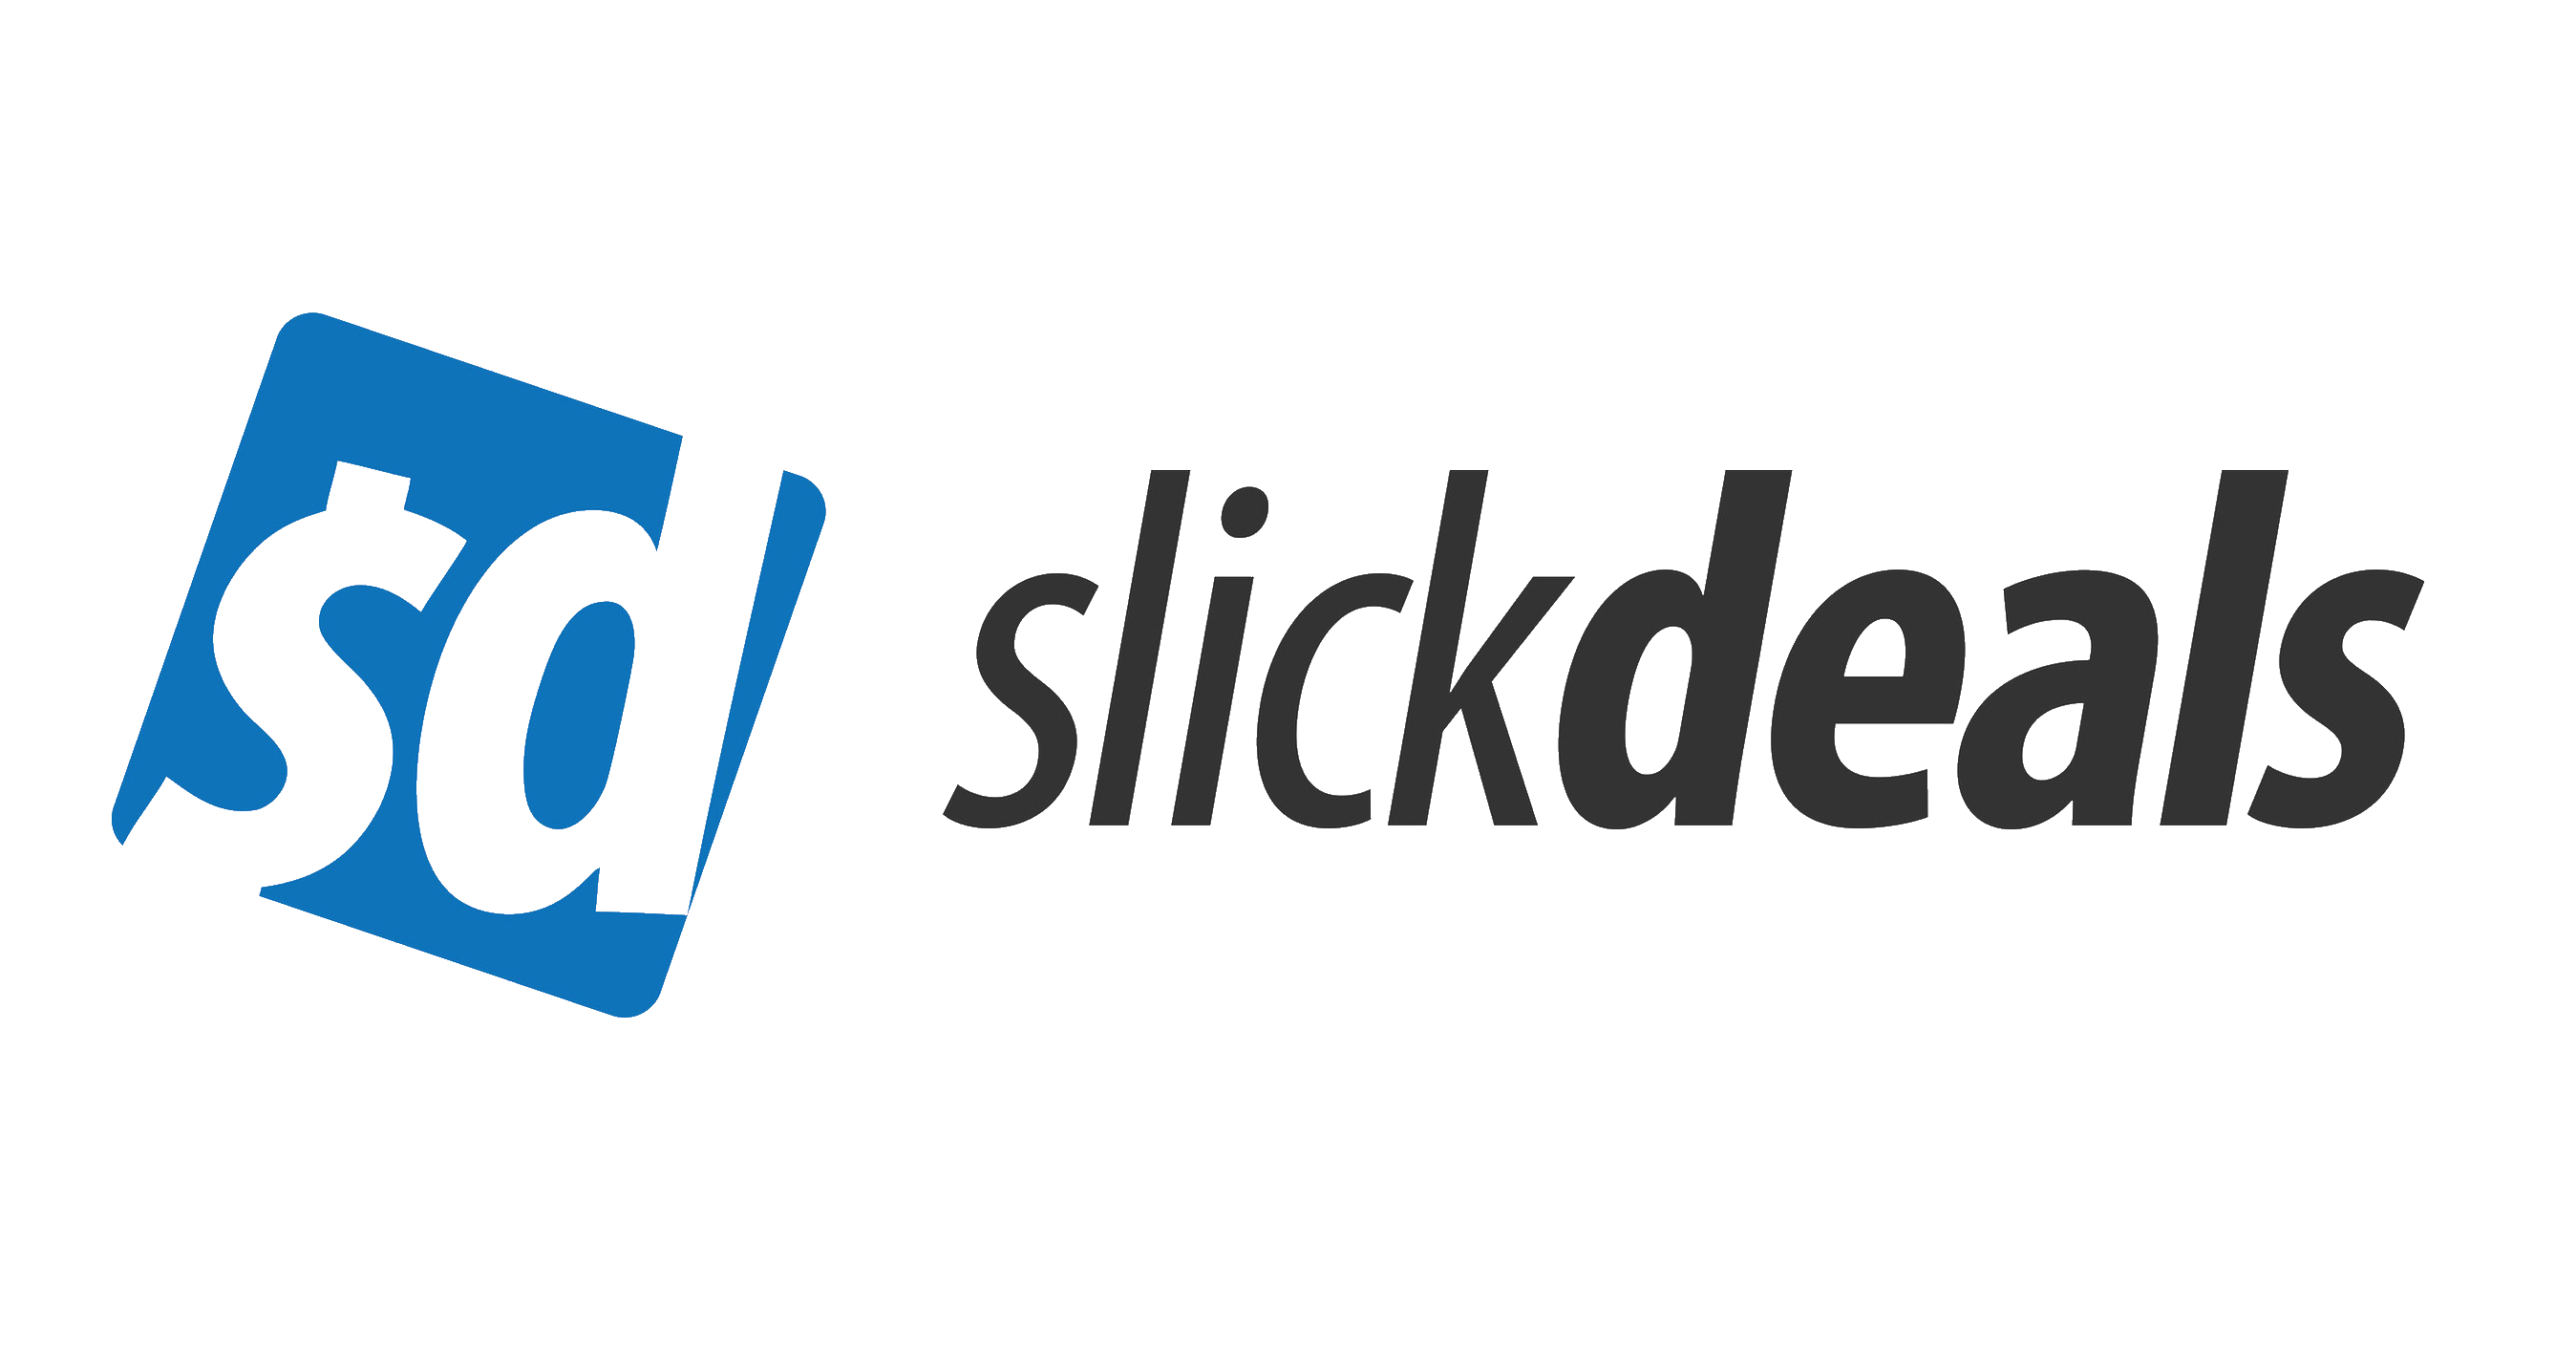 slickdeals logo transparent.png